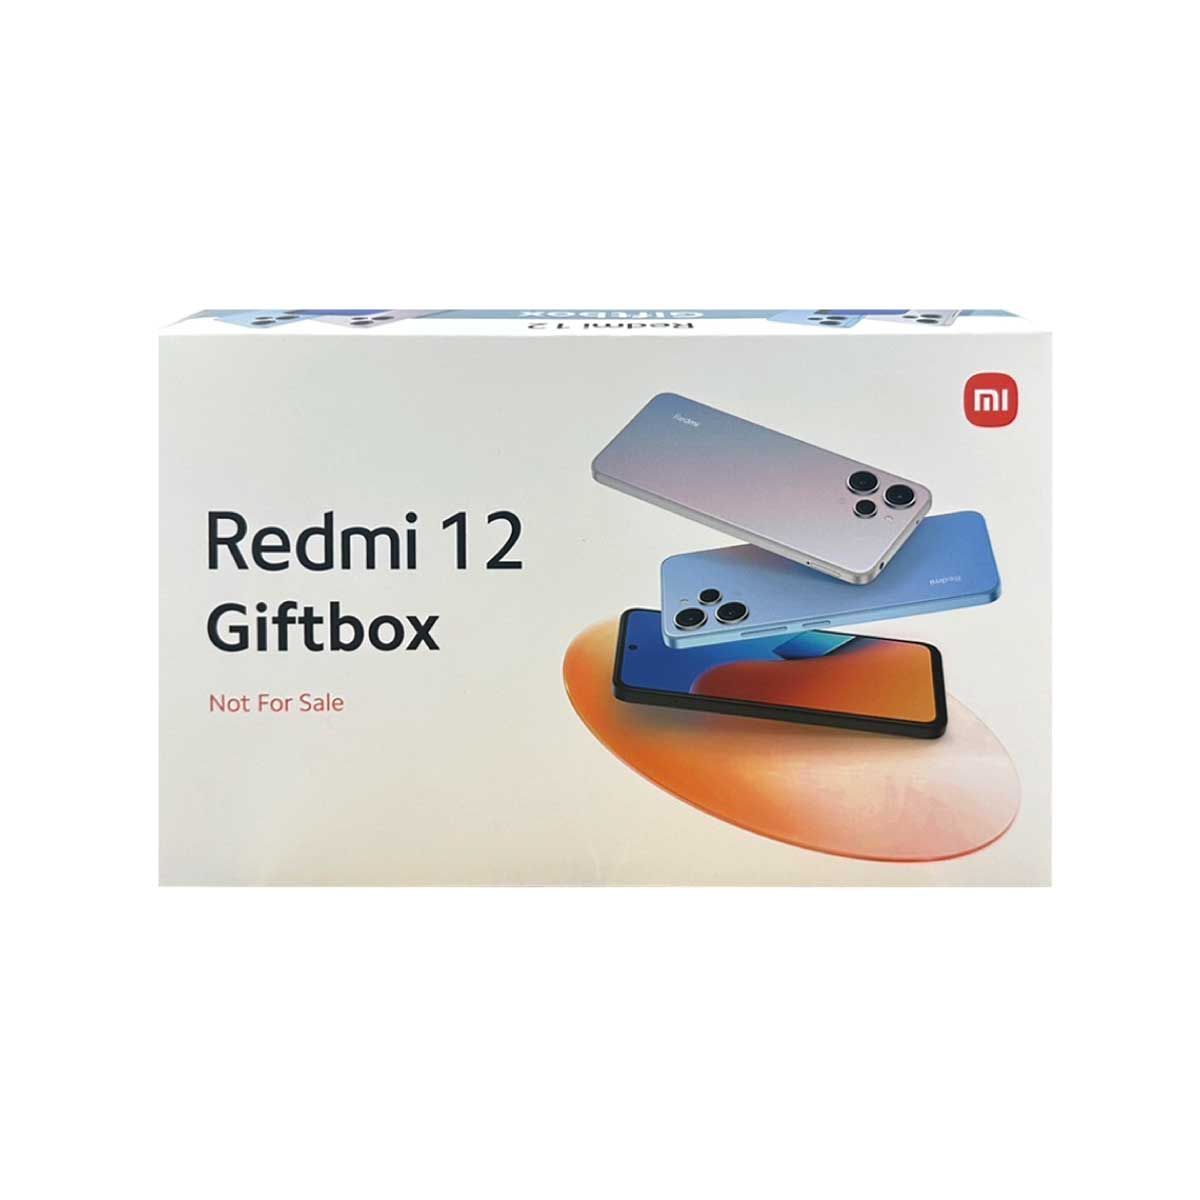 GIFTBOX Redmi 12 (ร่ม+ที่วางโทรศัพท์)